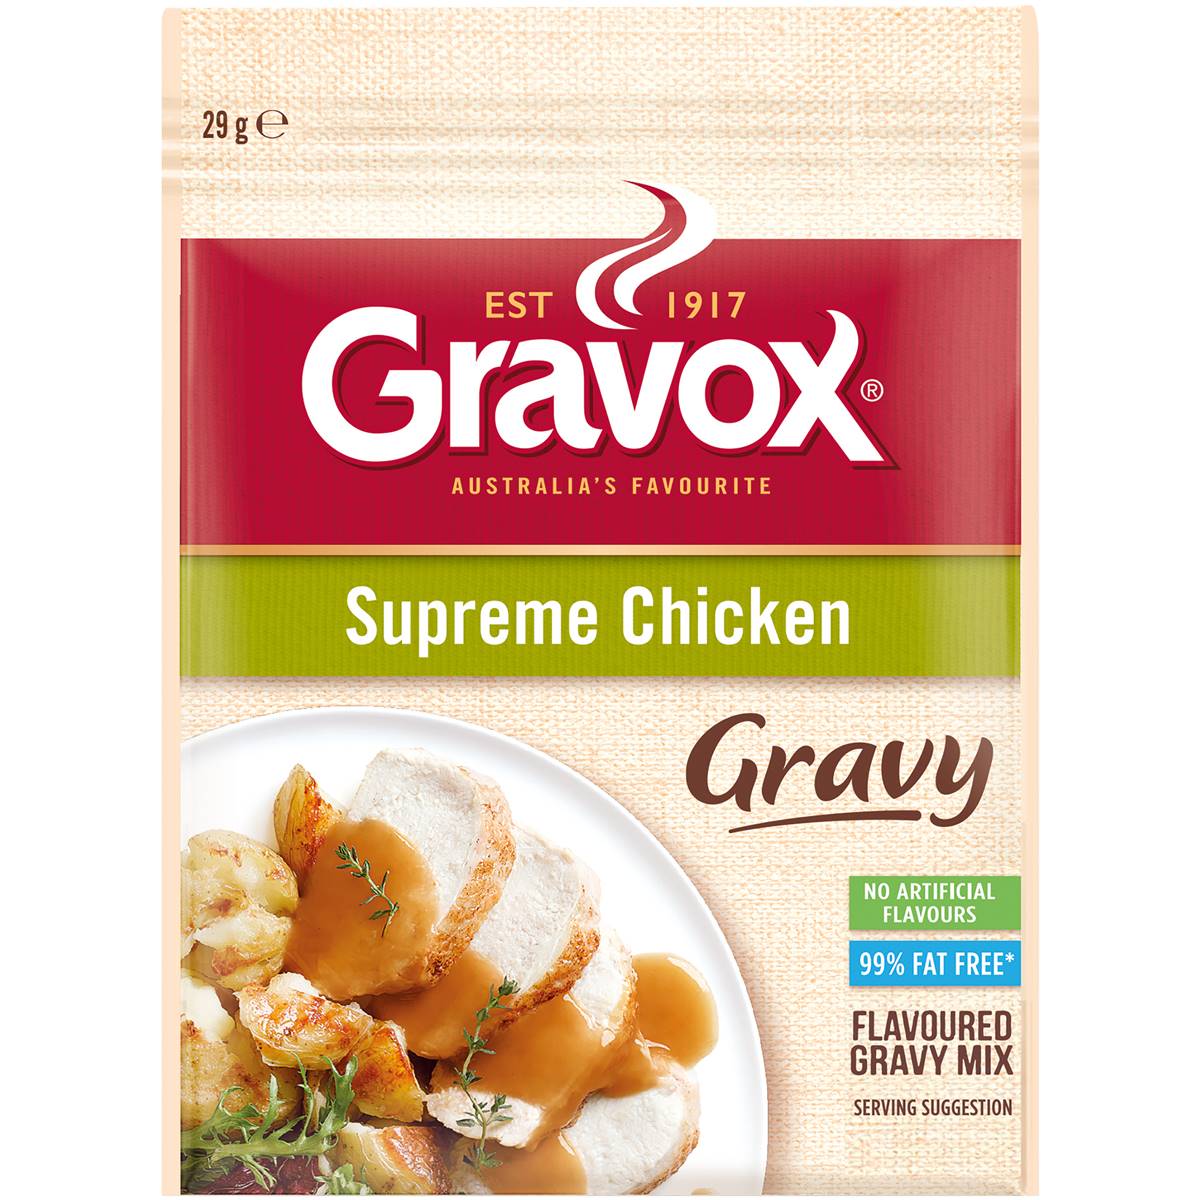 Gravox Supreme Chicken Gravy Mix 29g